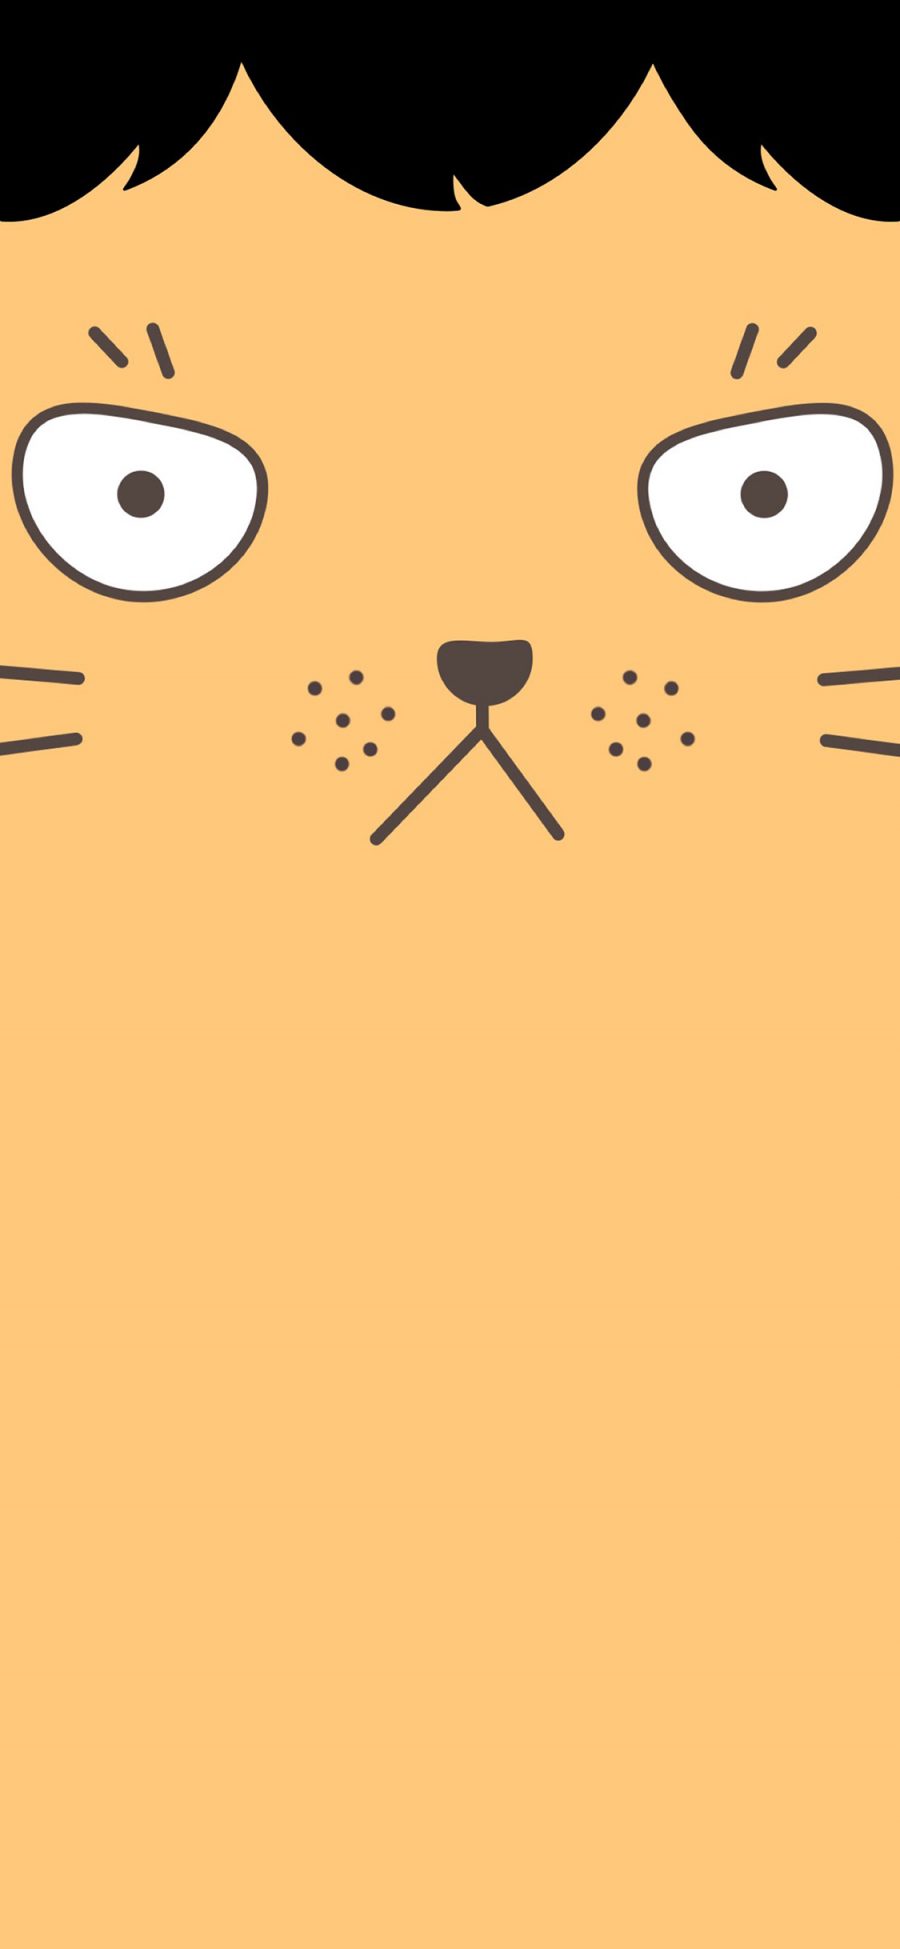 [2436×1125]猫咪 喵星人 刘海 卡通 苹果手机动漫壁纸图片